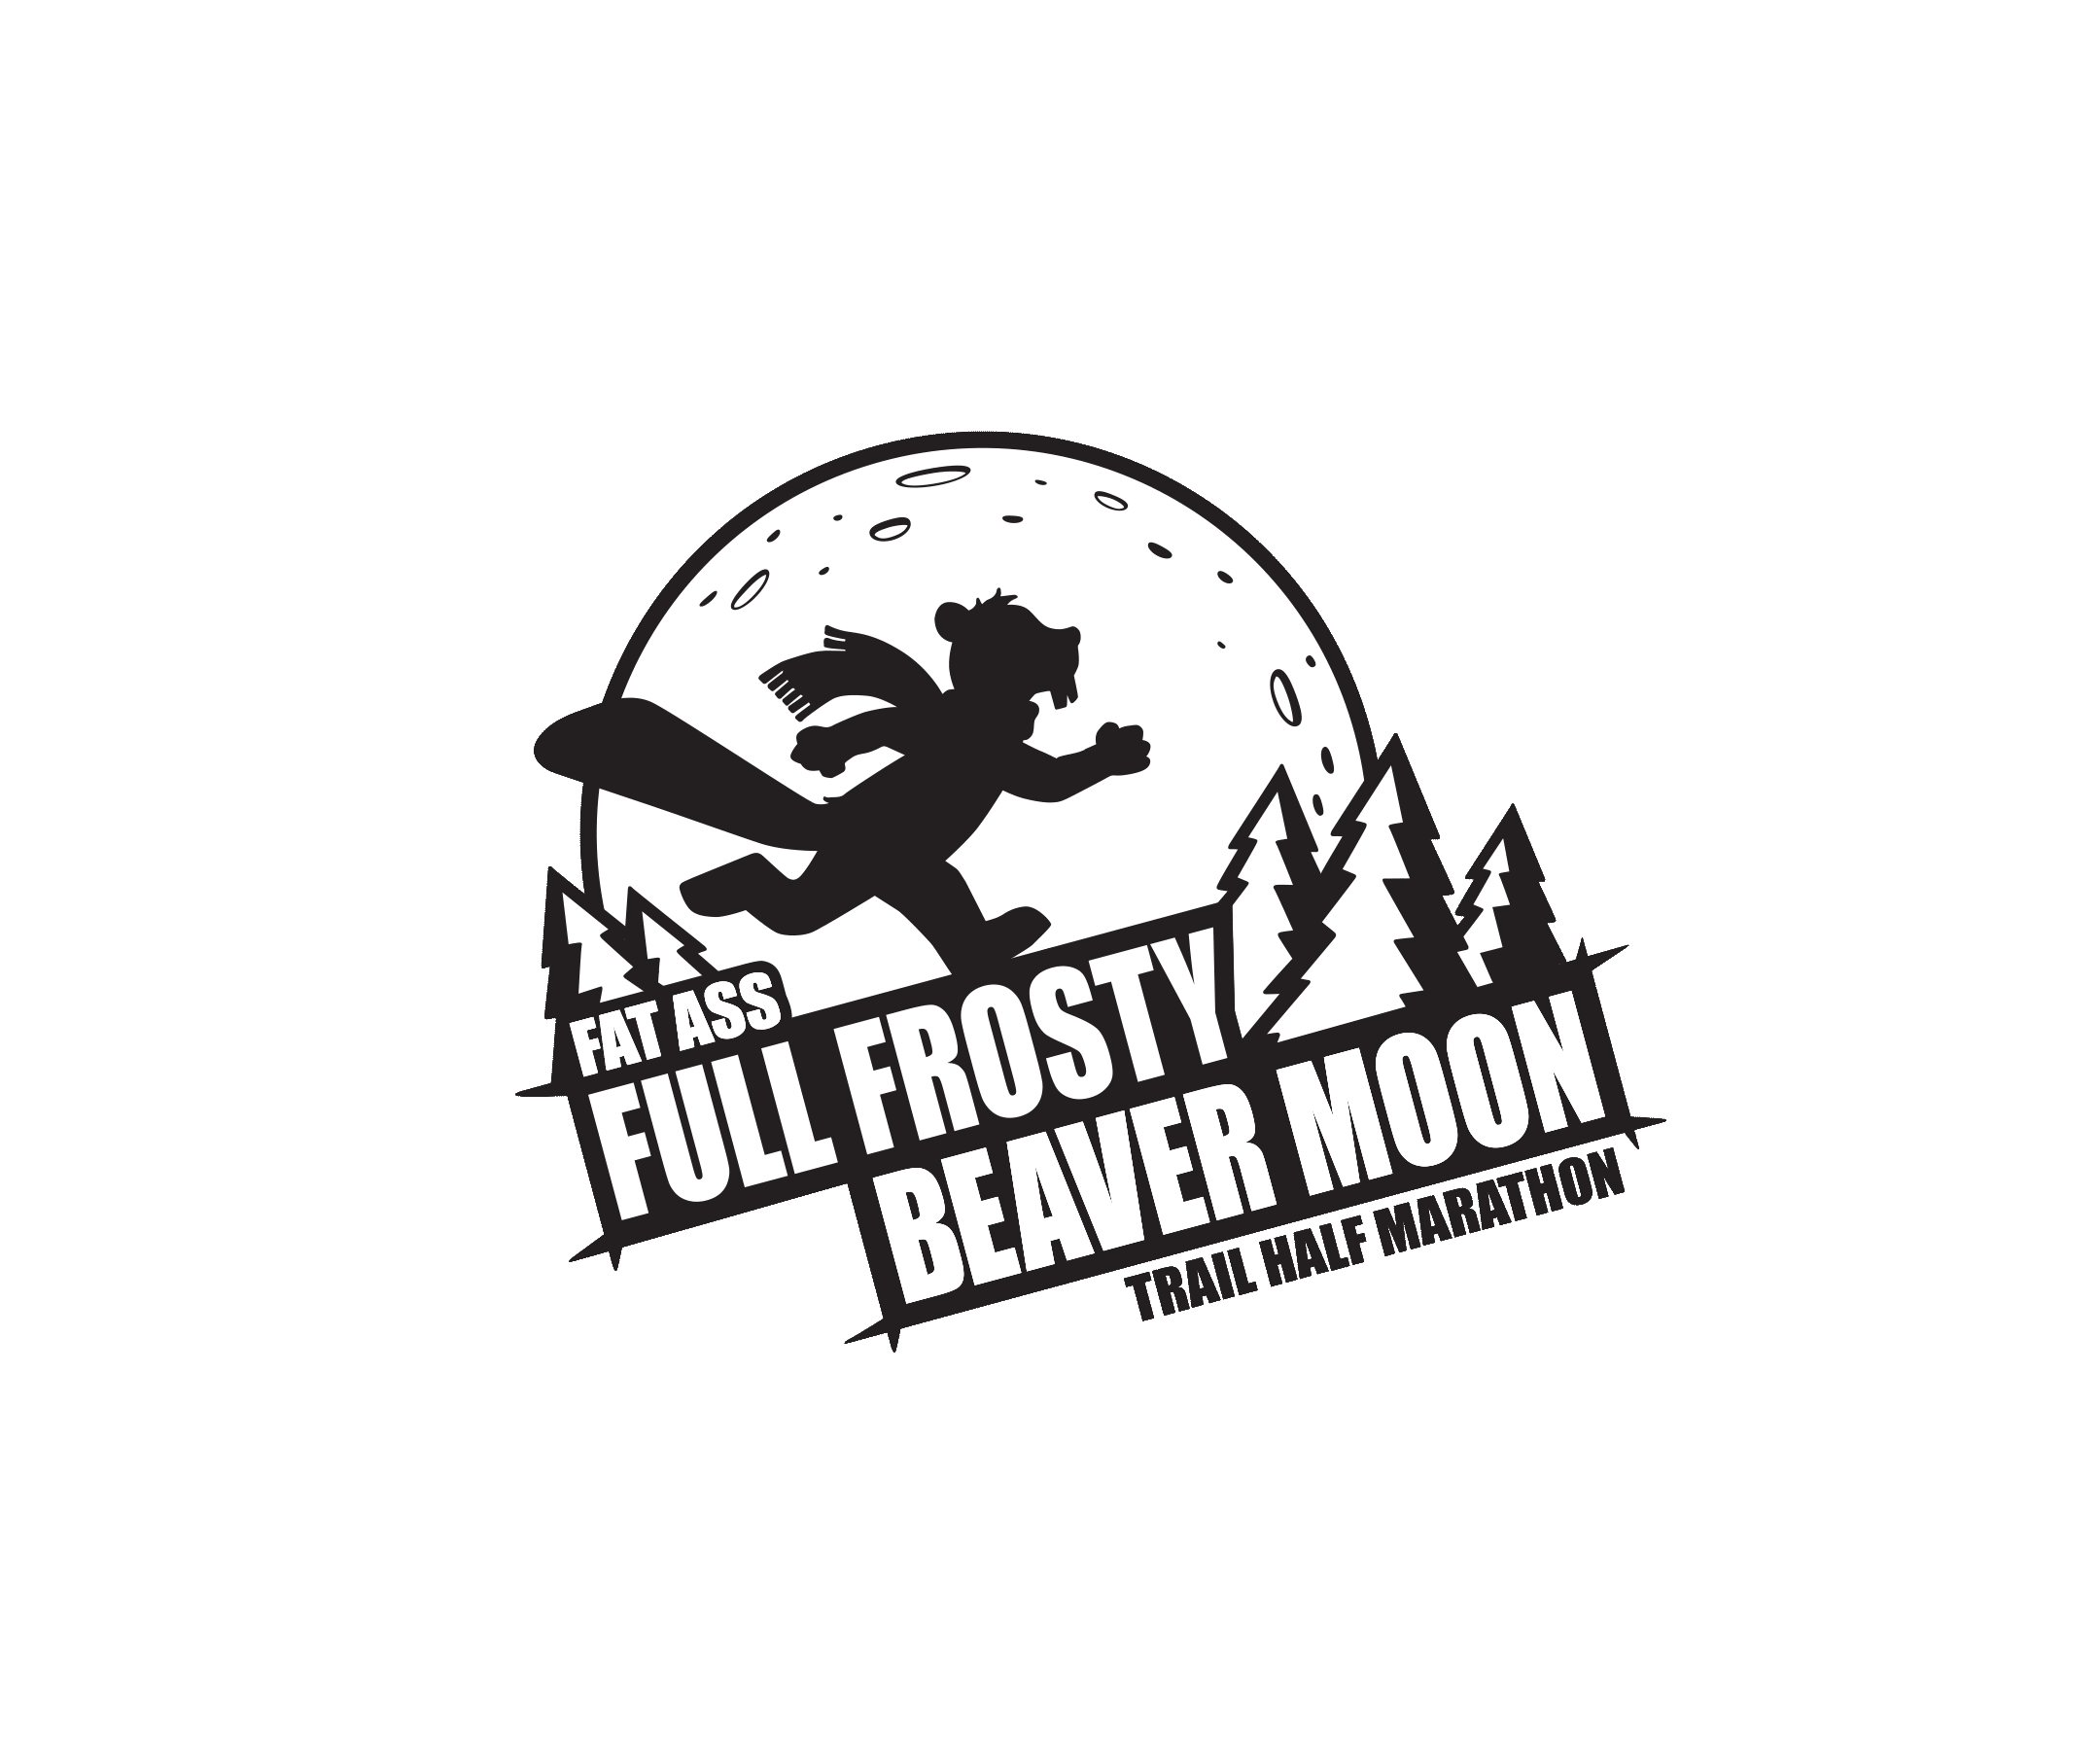 2020 Fat Ass Full Frosty Beaver Moon Half